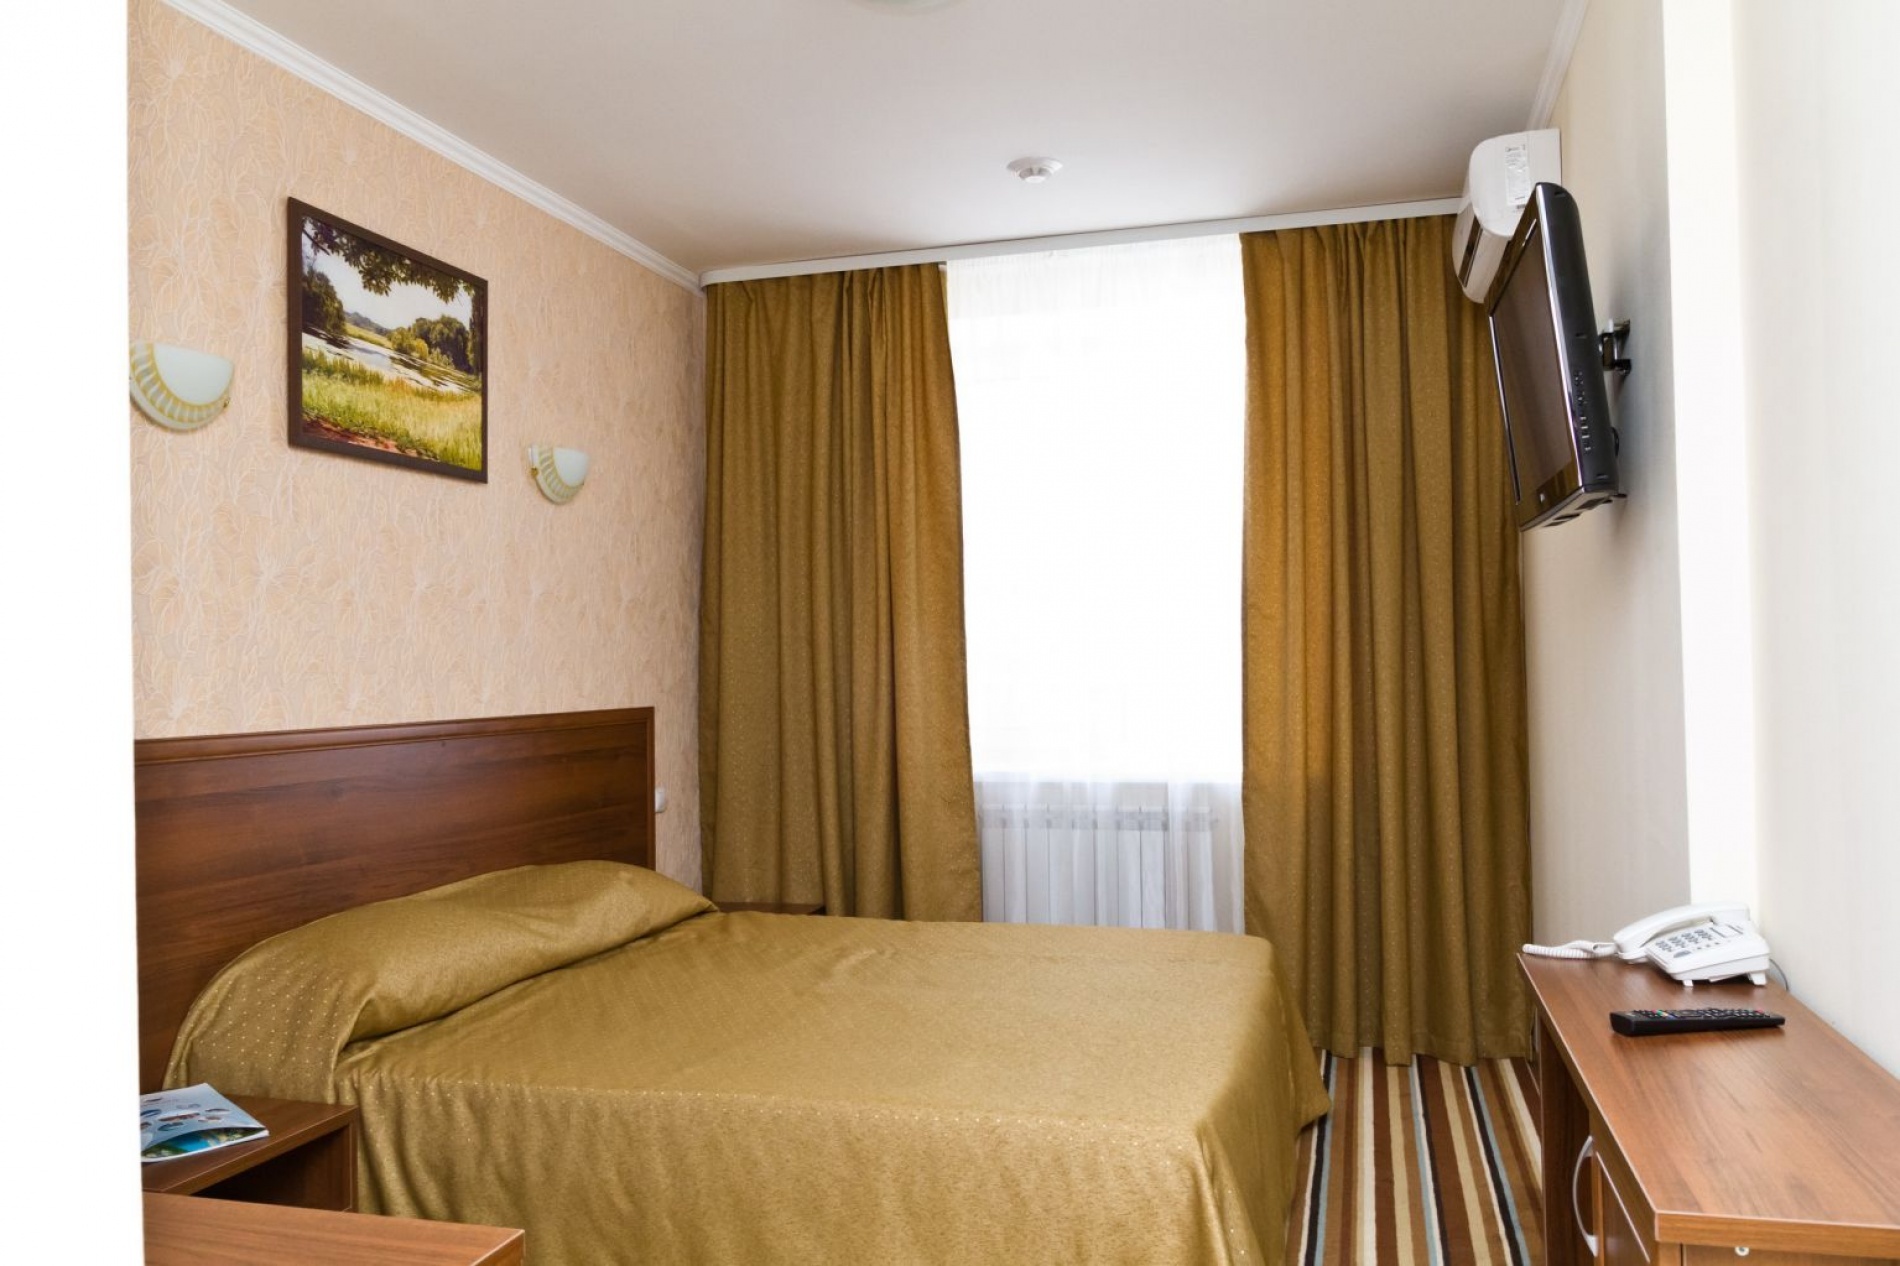 База отдыха "Верхний Бор" Тюменская область СПА-отеле "Источник" номер 2-местный 2-комнатный , фото 2